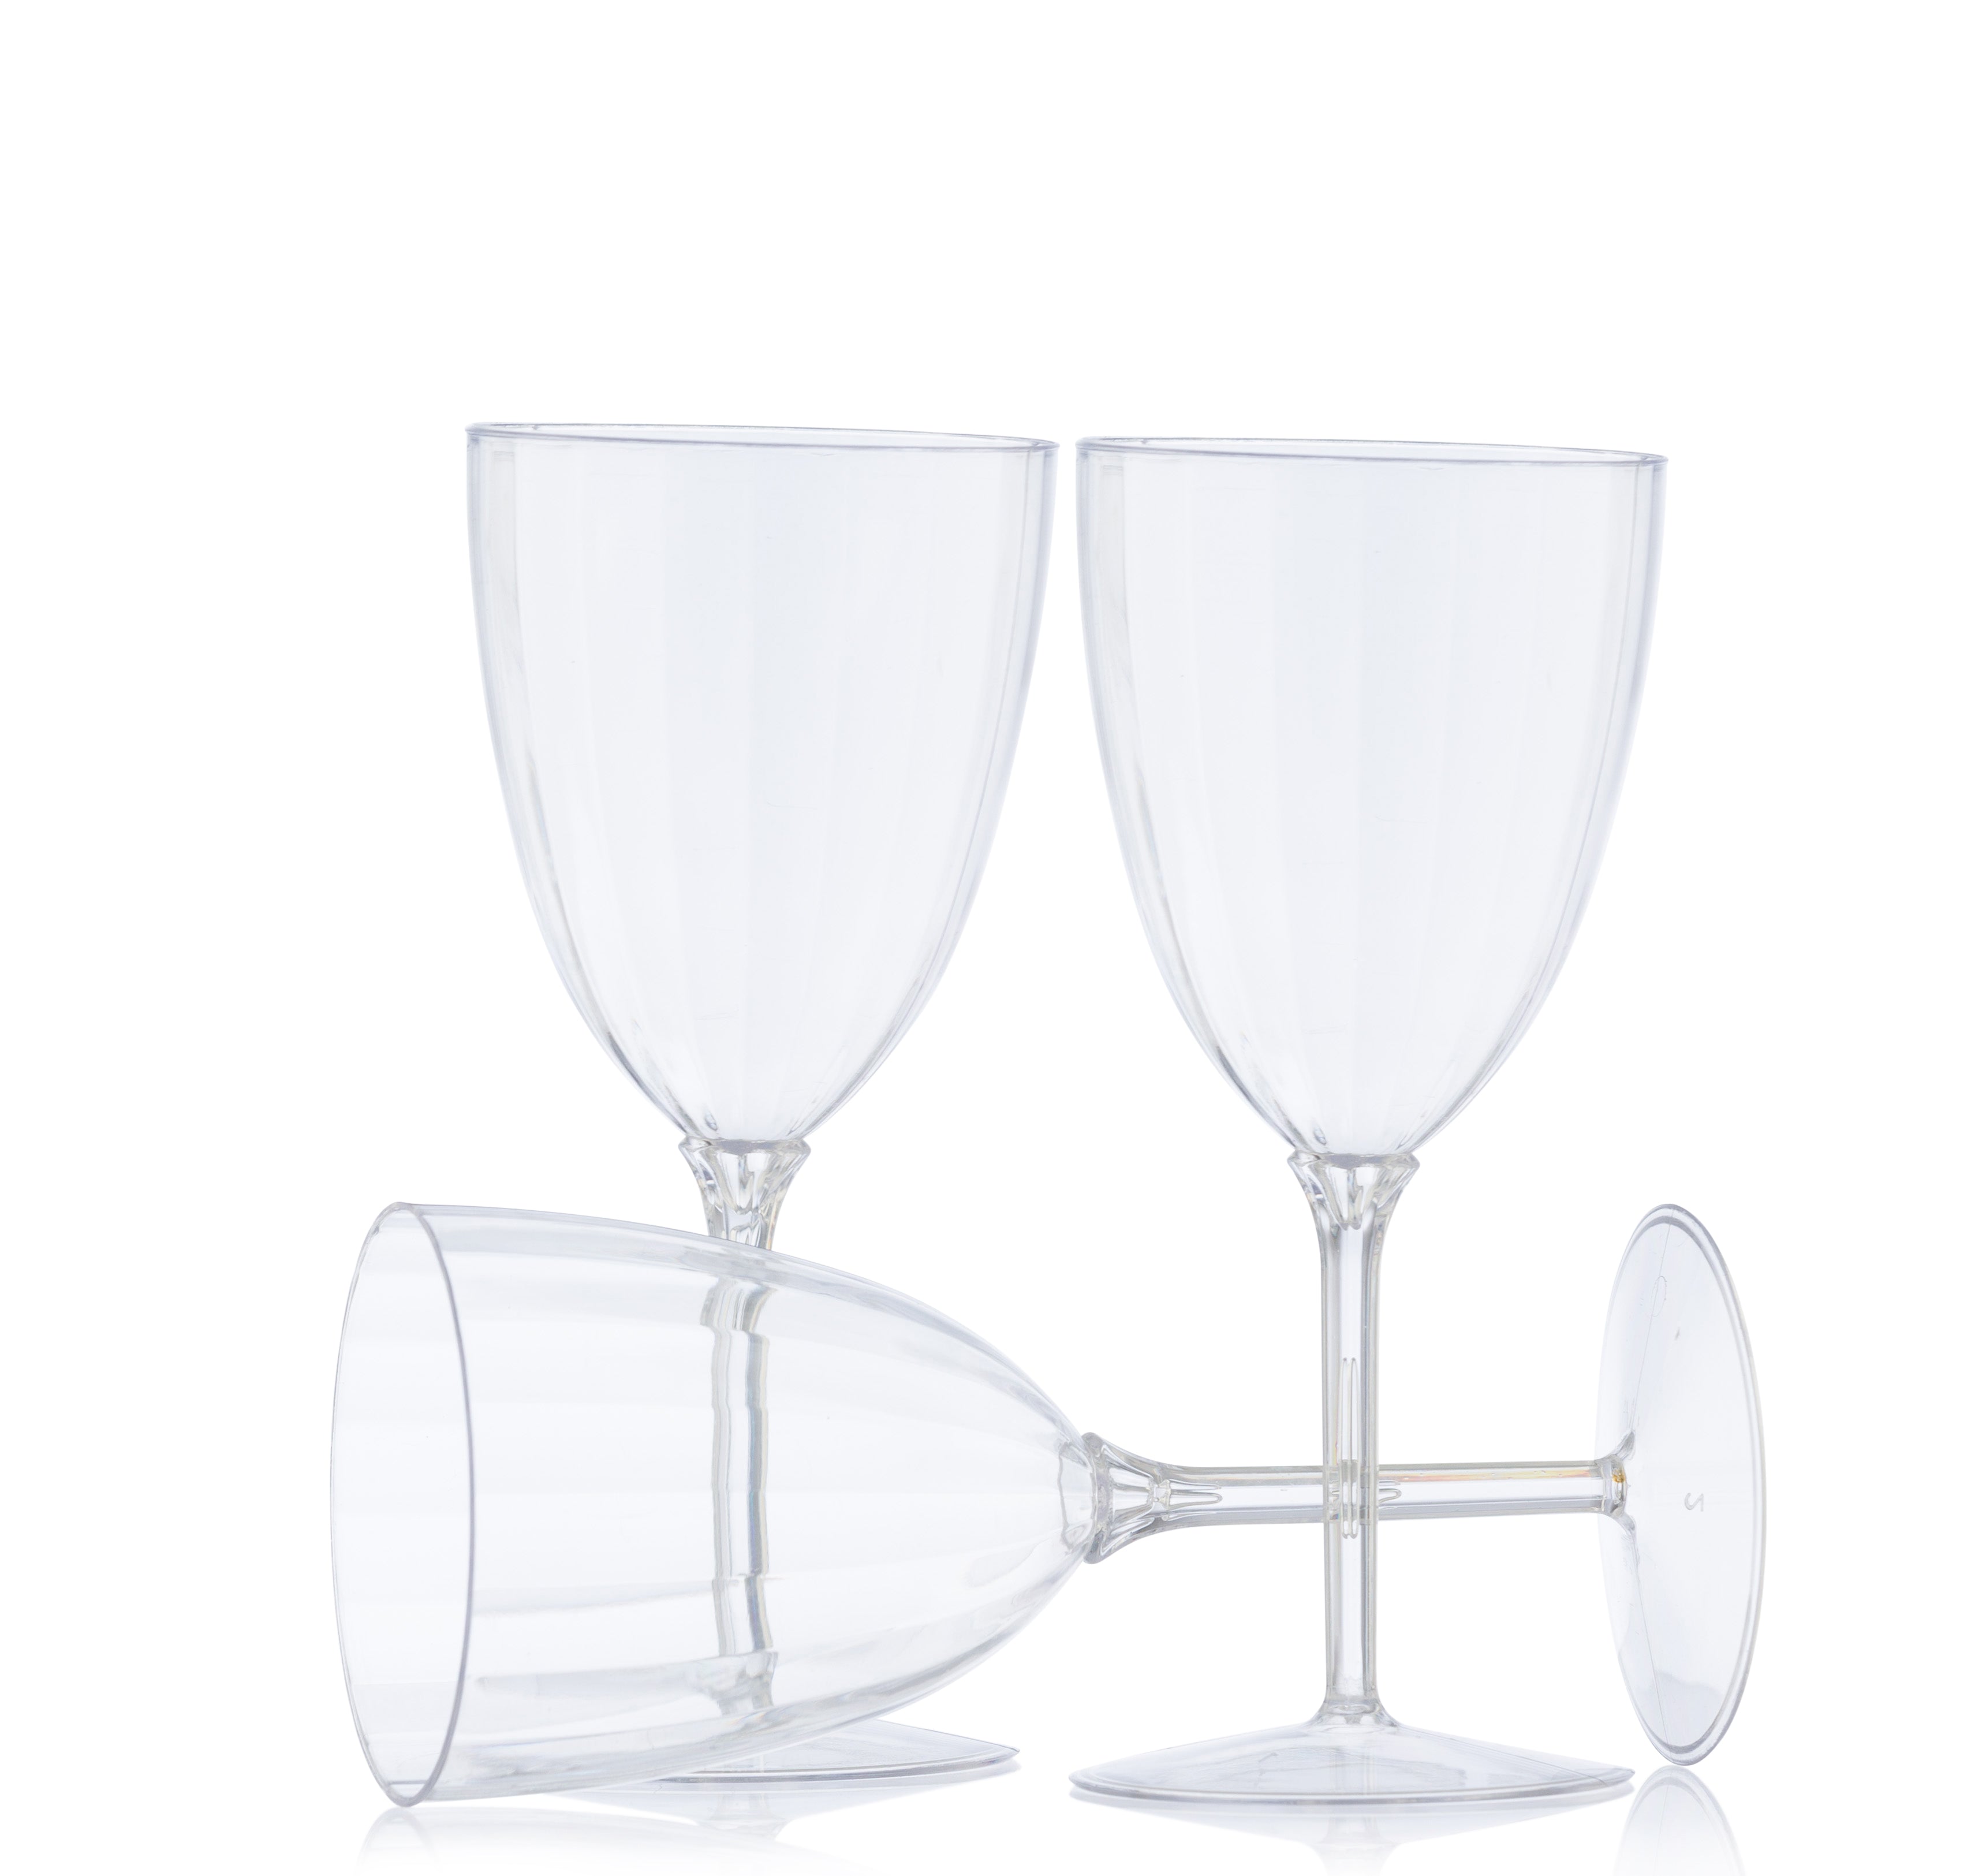 Plastic Stemmed Colored Wine Glasses/Goblets (Set of 8)